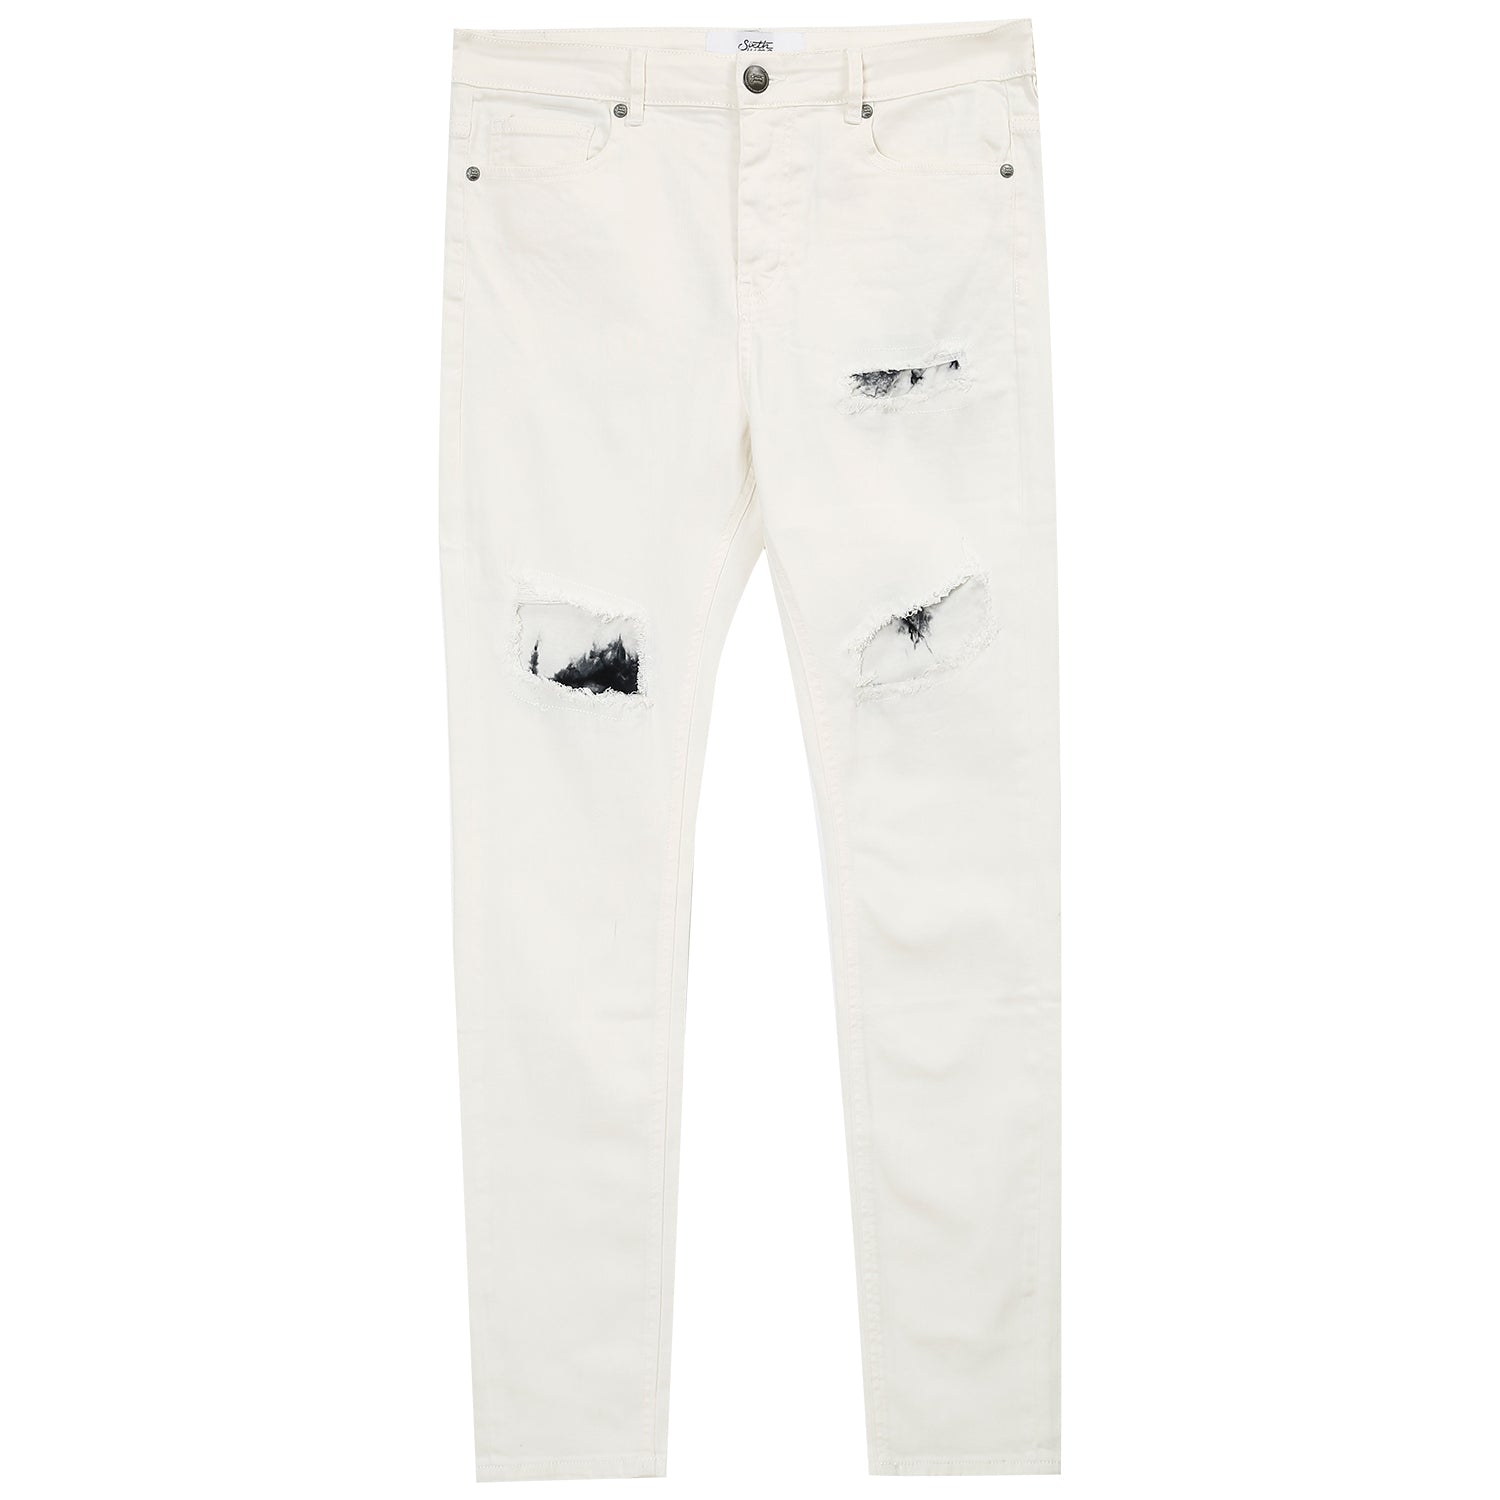 Jeans mit Batikeinsätzen in Weiß